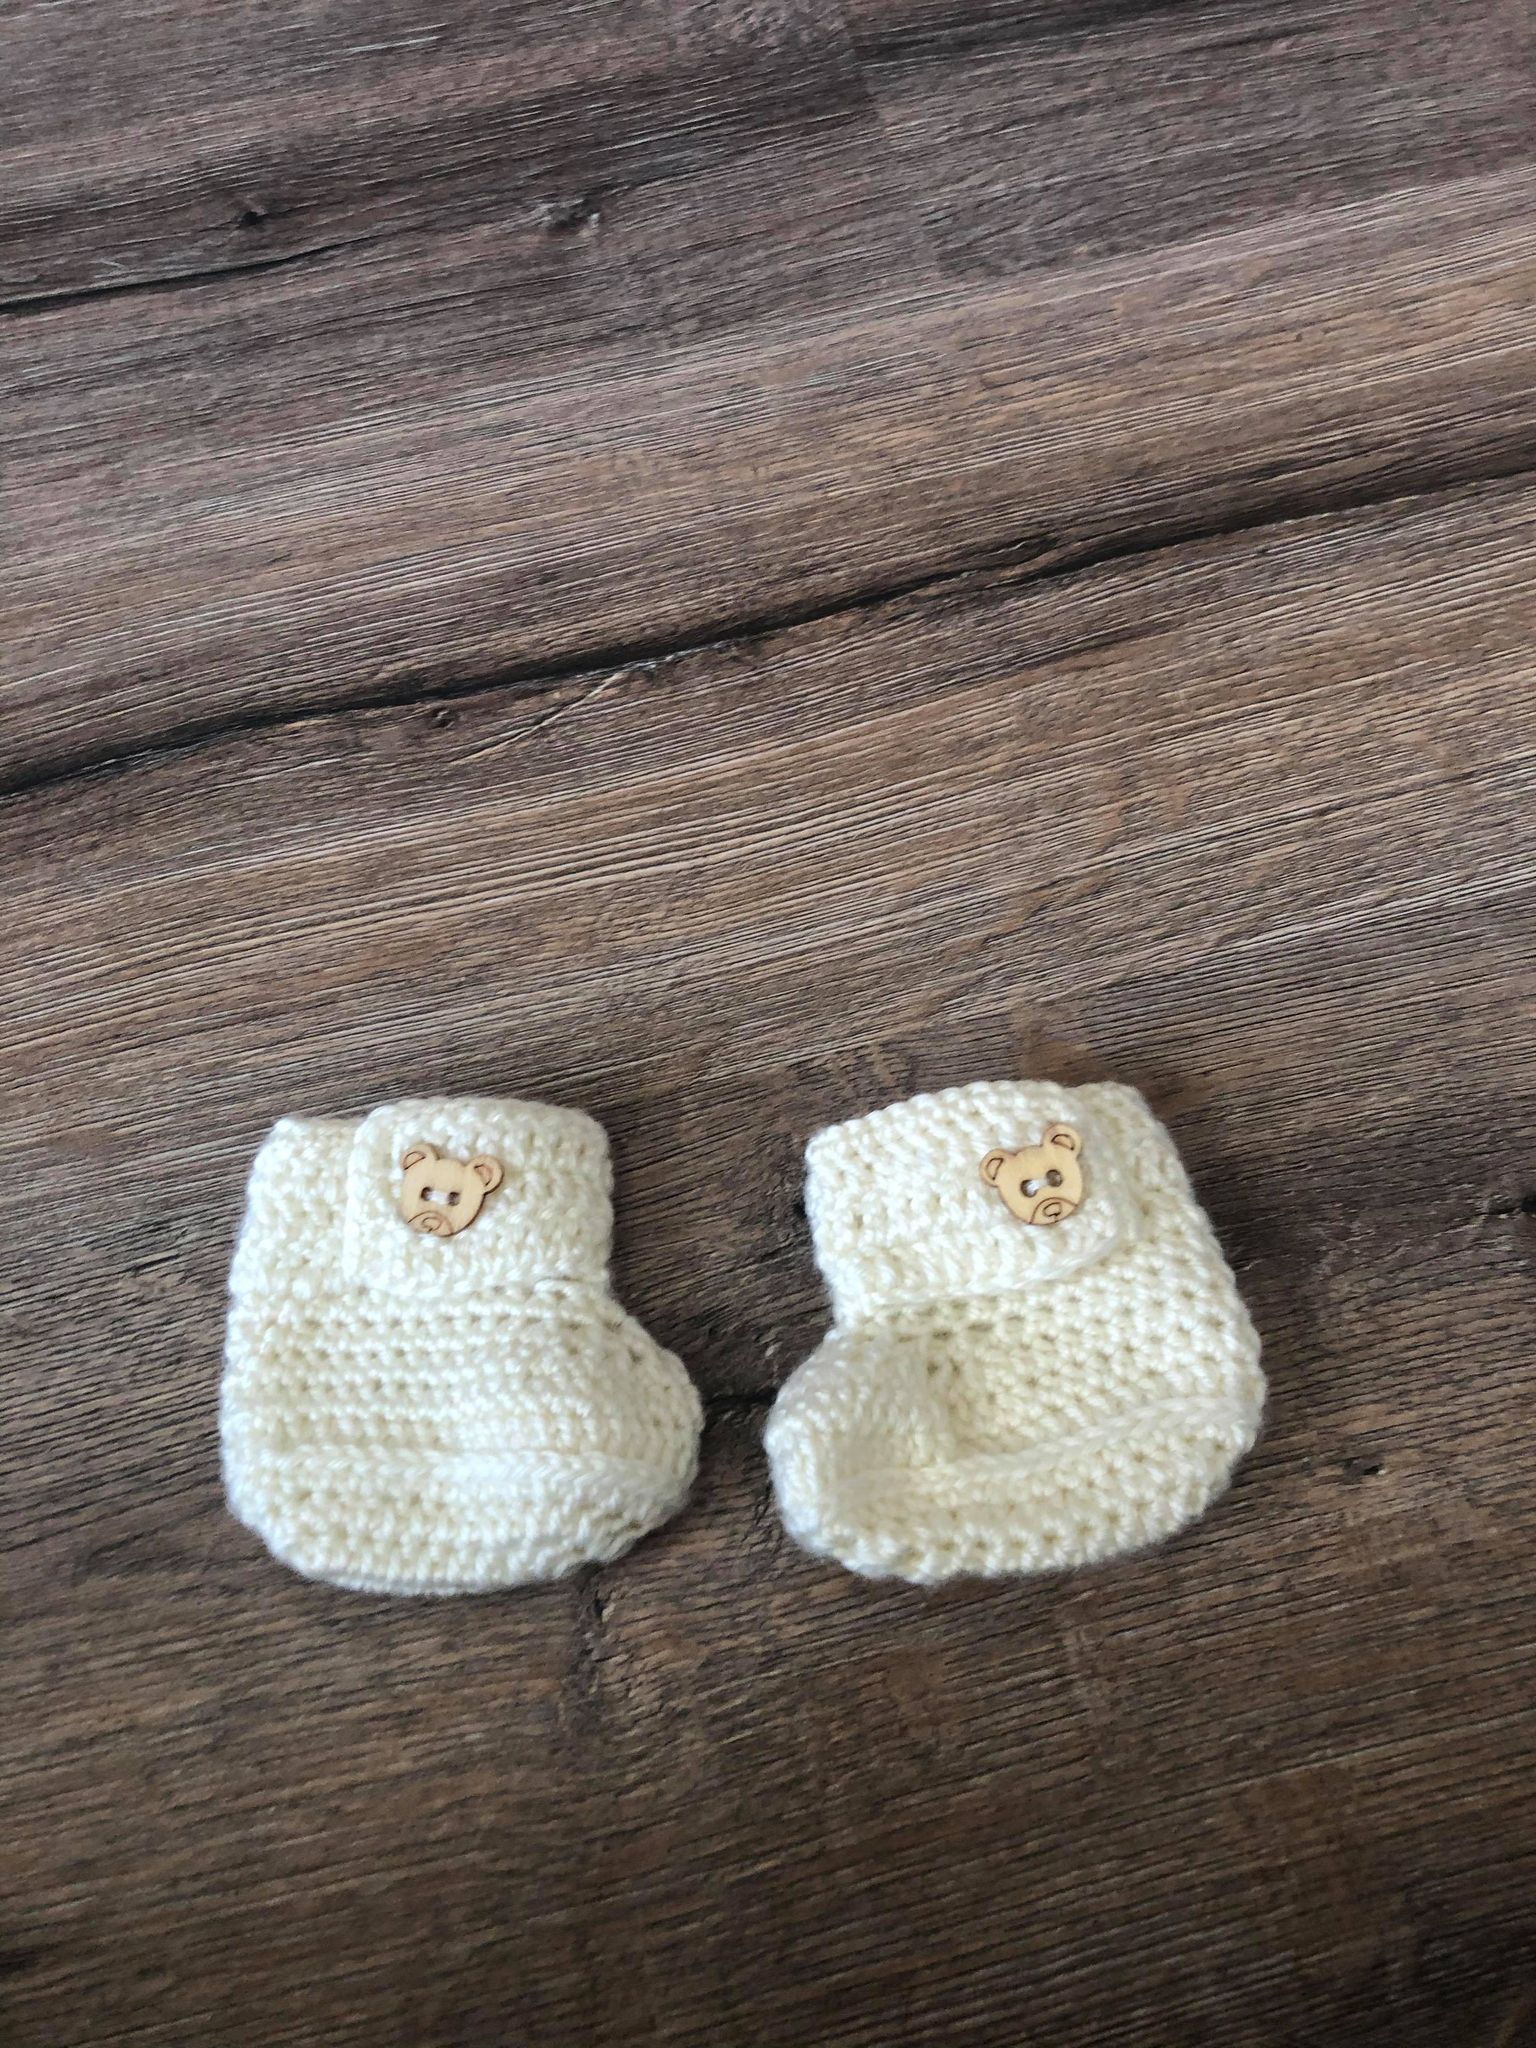 handmade baby booties